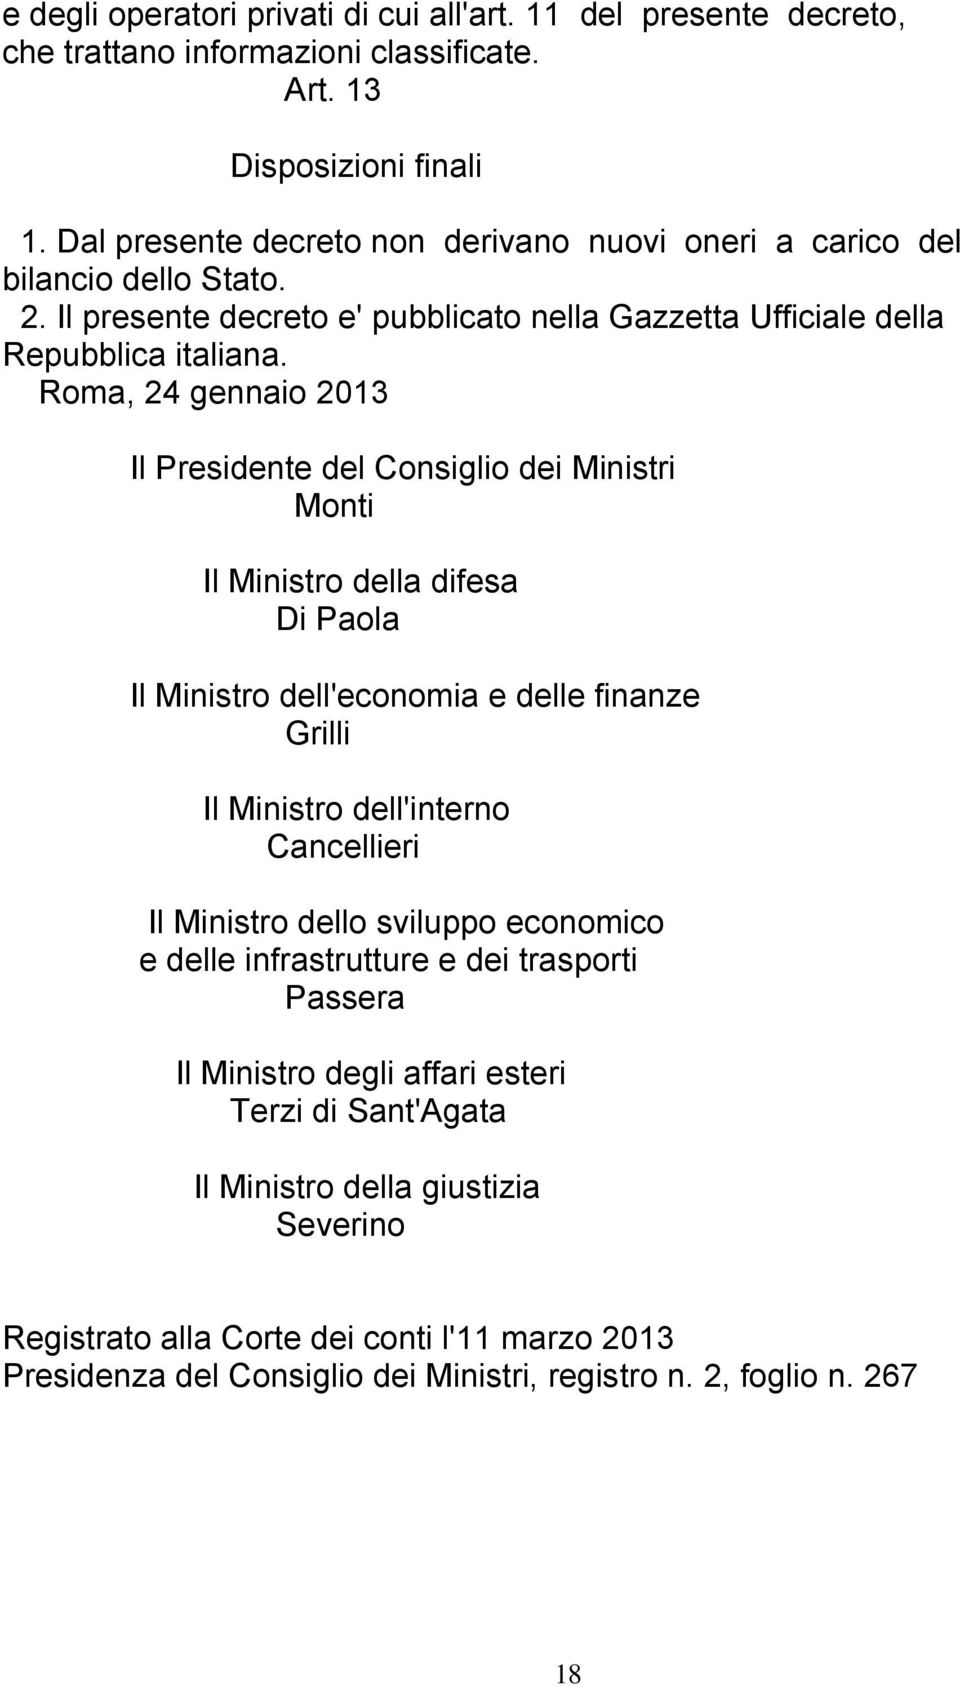 Roma, 24 gennaio 2013 Il Presidente del Consiglio dei Ministri Monti Il Ministro della difesa Di Paola Il Ministro dell'economia e delle finanze Grilli Il Ministro dell'interno Cancellieri Il